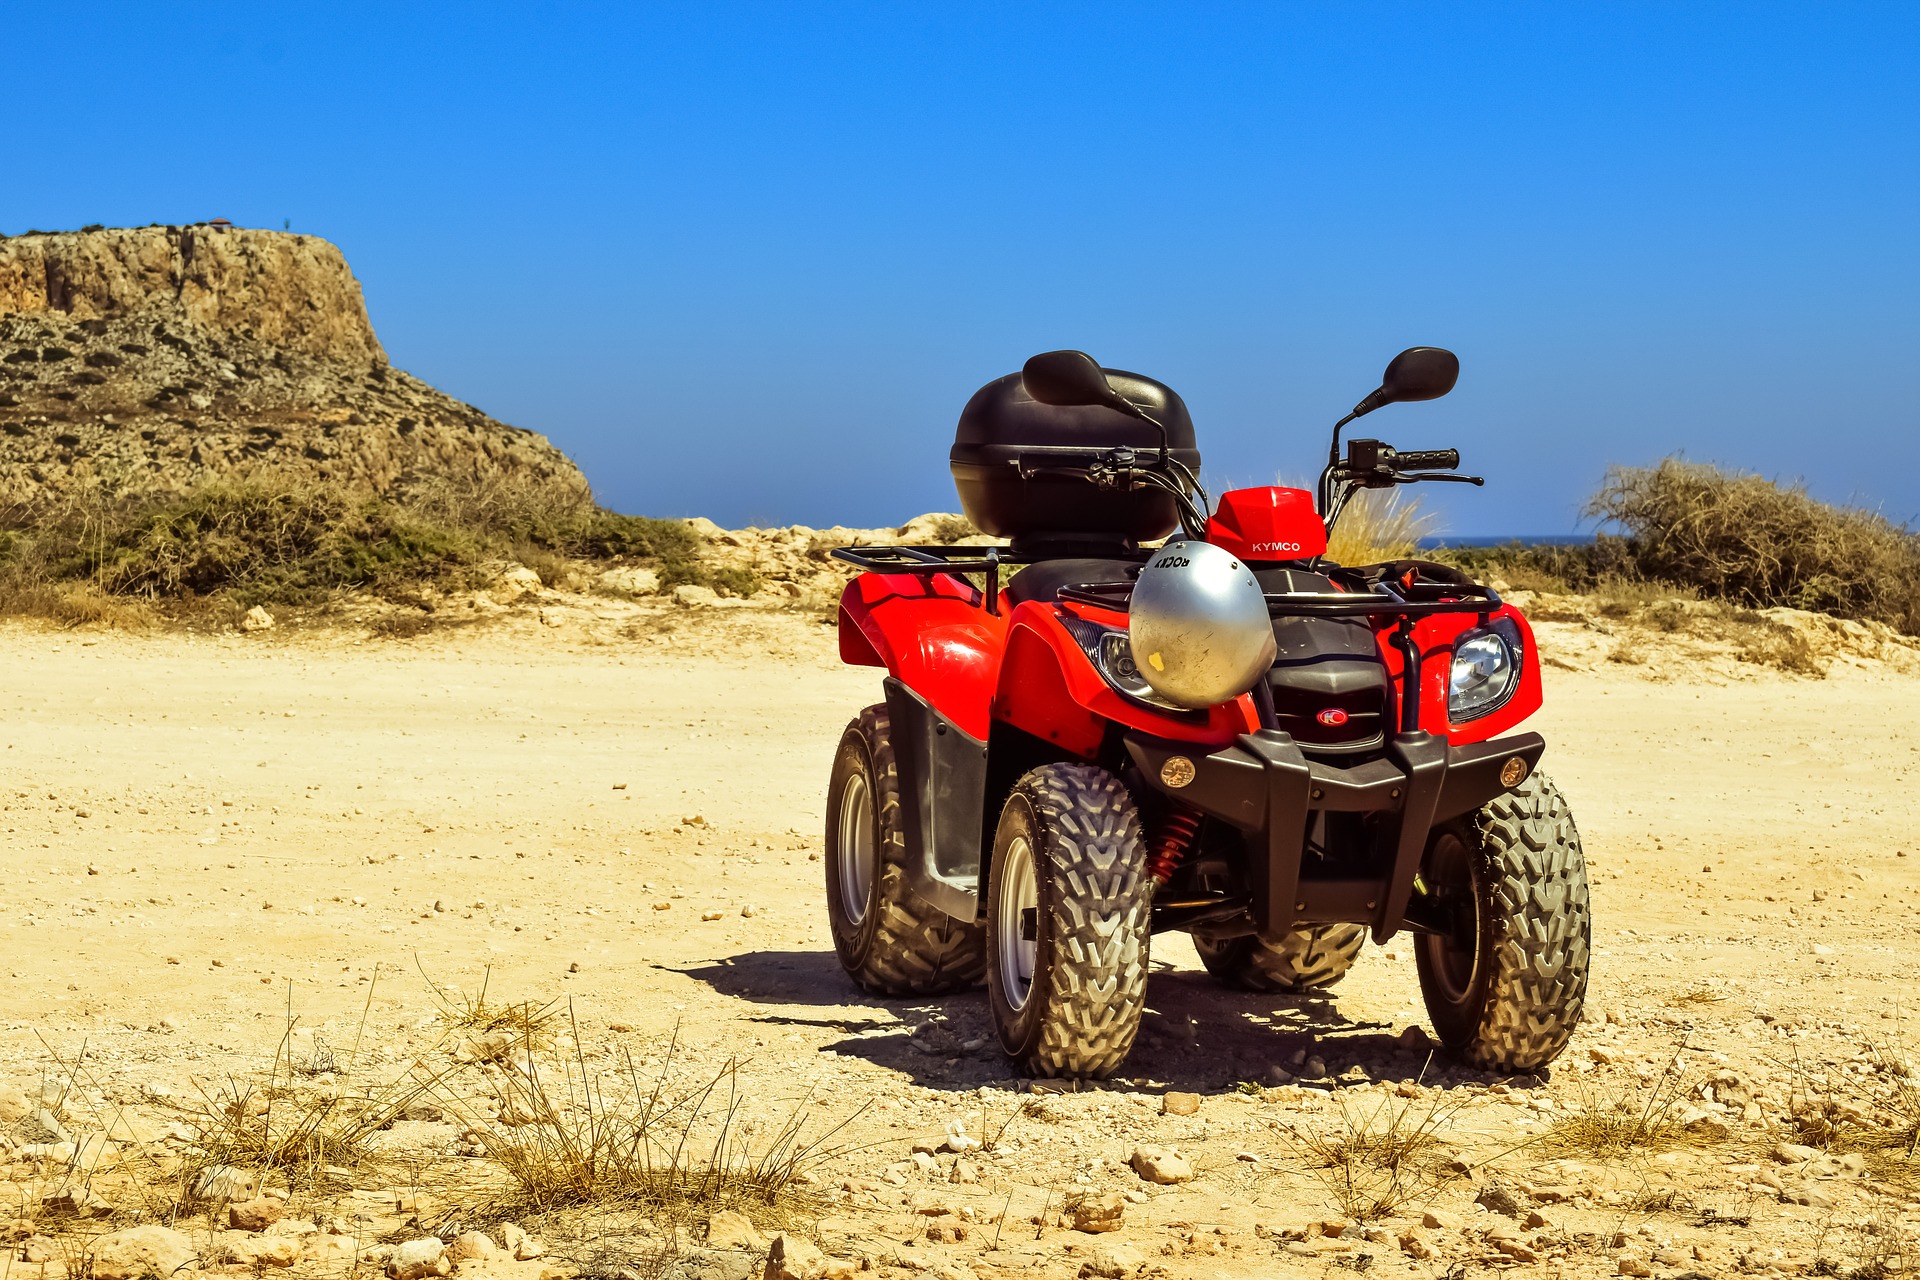 Red KYMCO ATV/Quad (Dune Buggy) by Dimitris Vetsikas